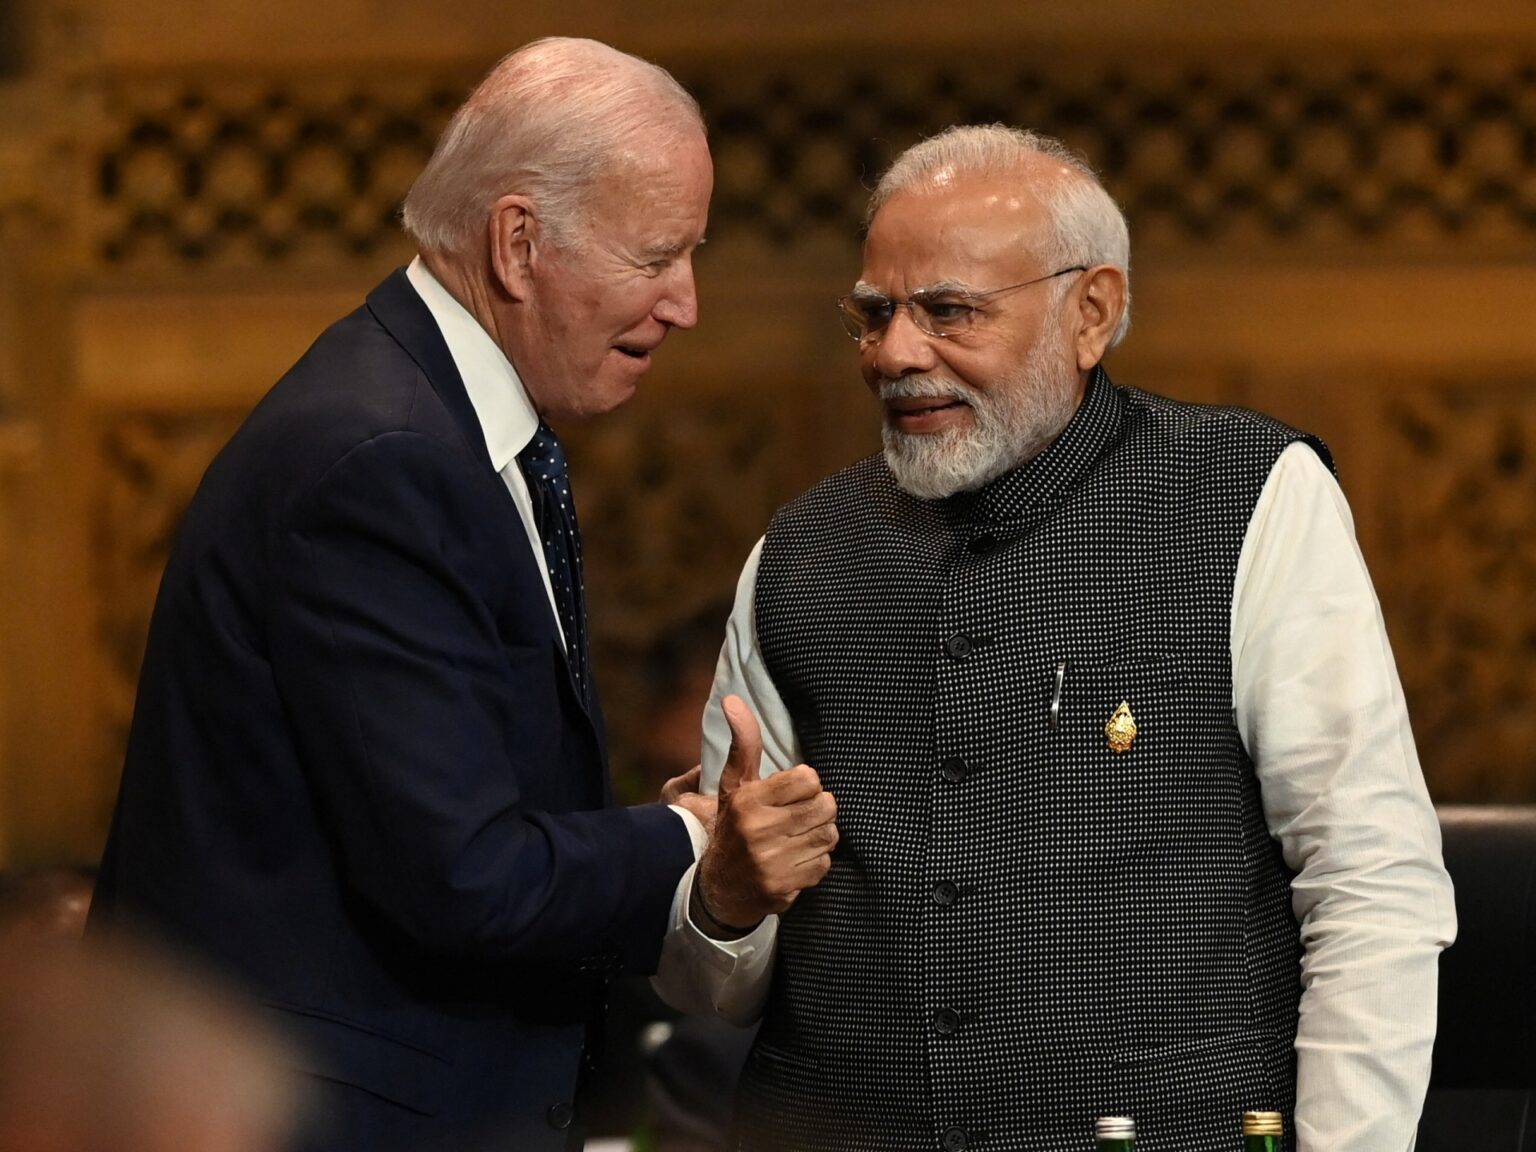 Biden will receive India’s Modi next at the White House